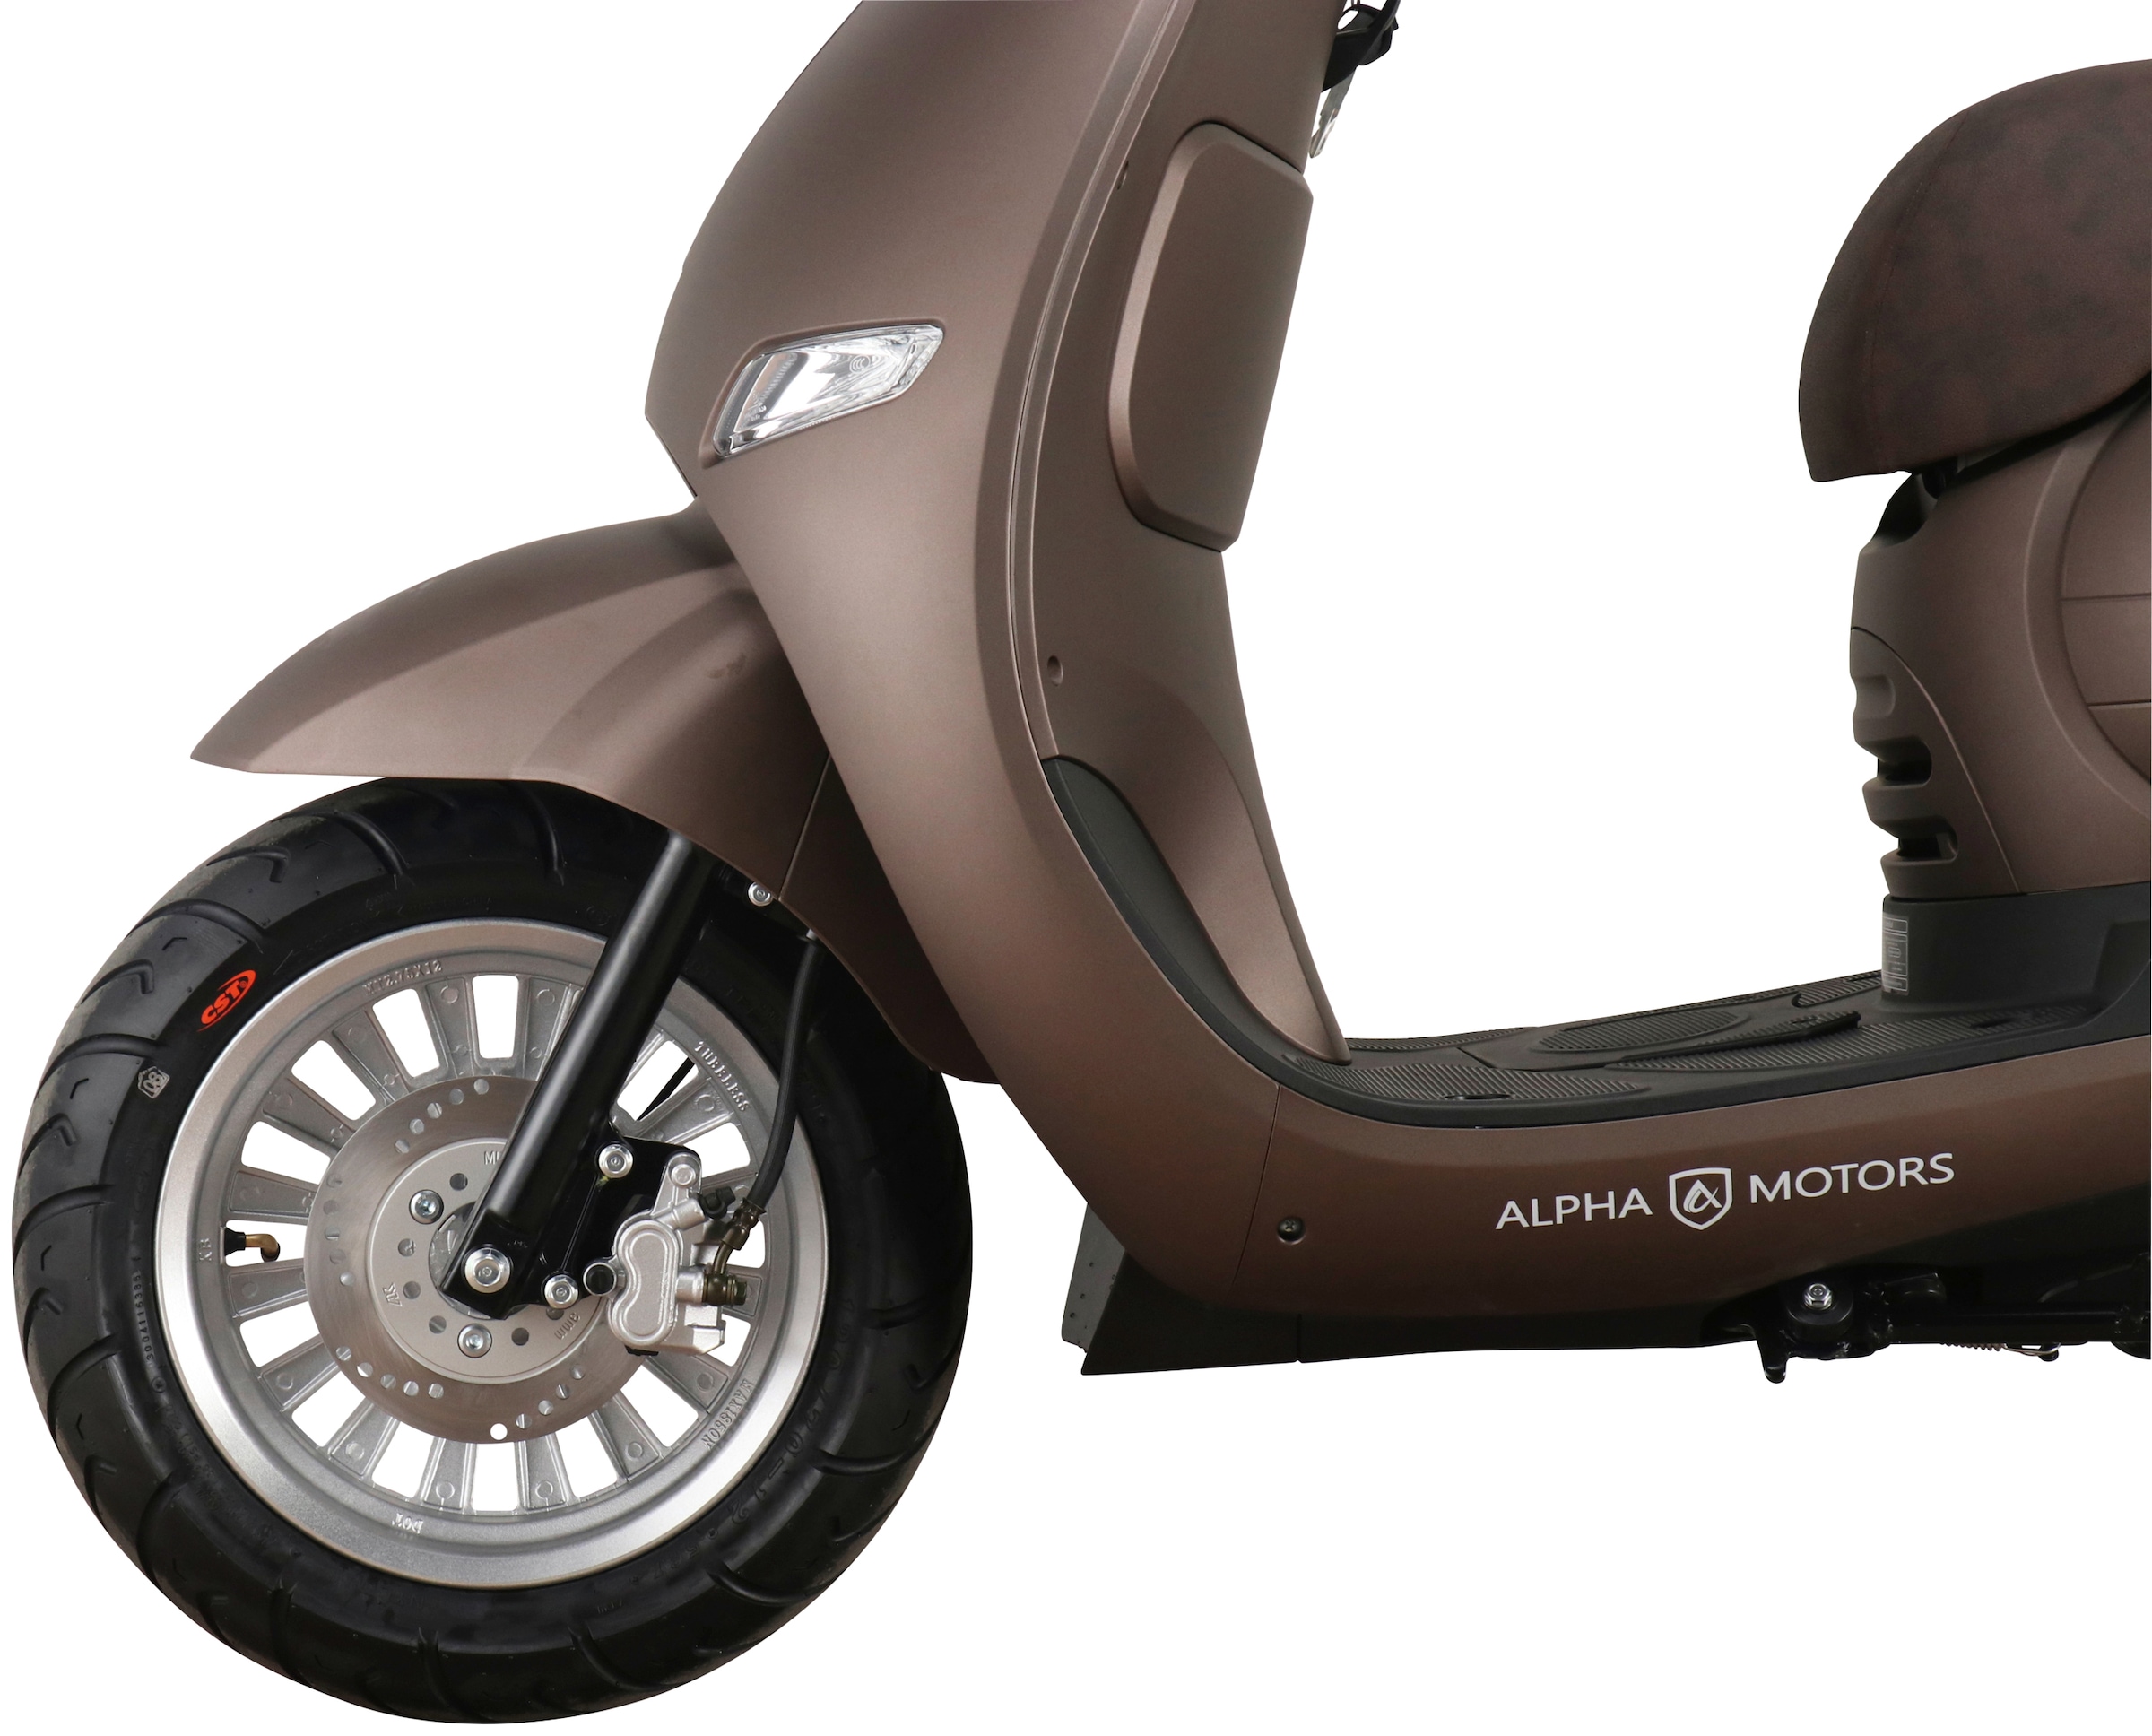 Alpha Motors Motorroller »Cappucino«, 125 cm³, 85 km/h, Euro 5, 8,56 PS  jetzt im %Sale